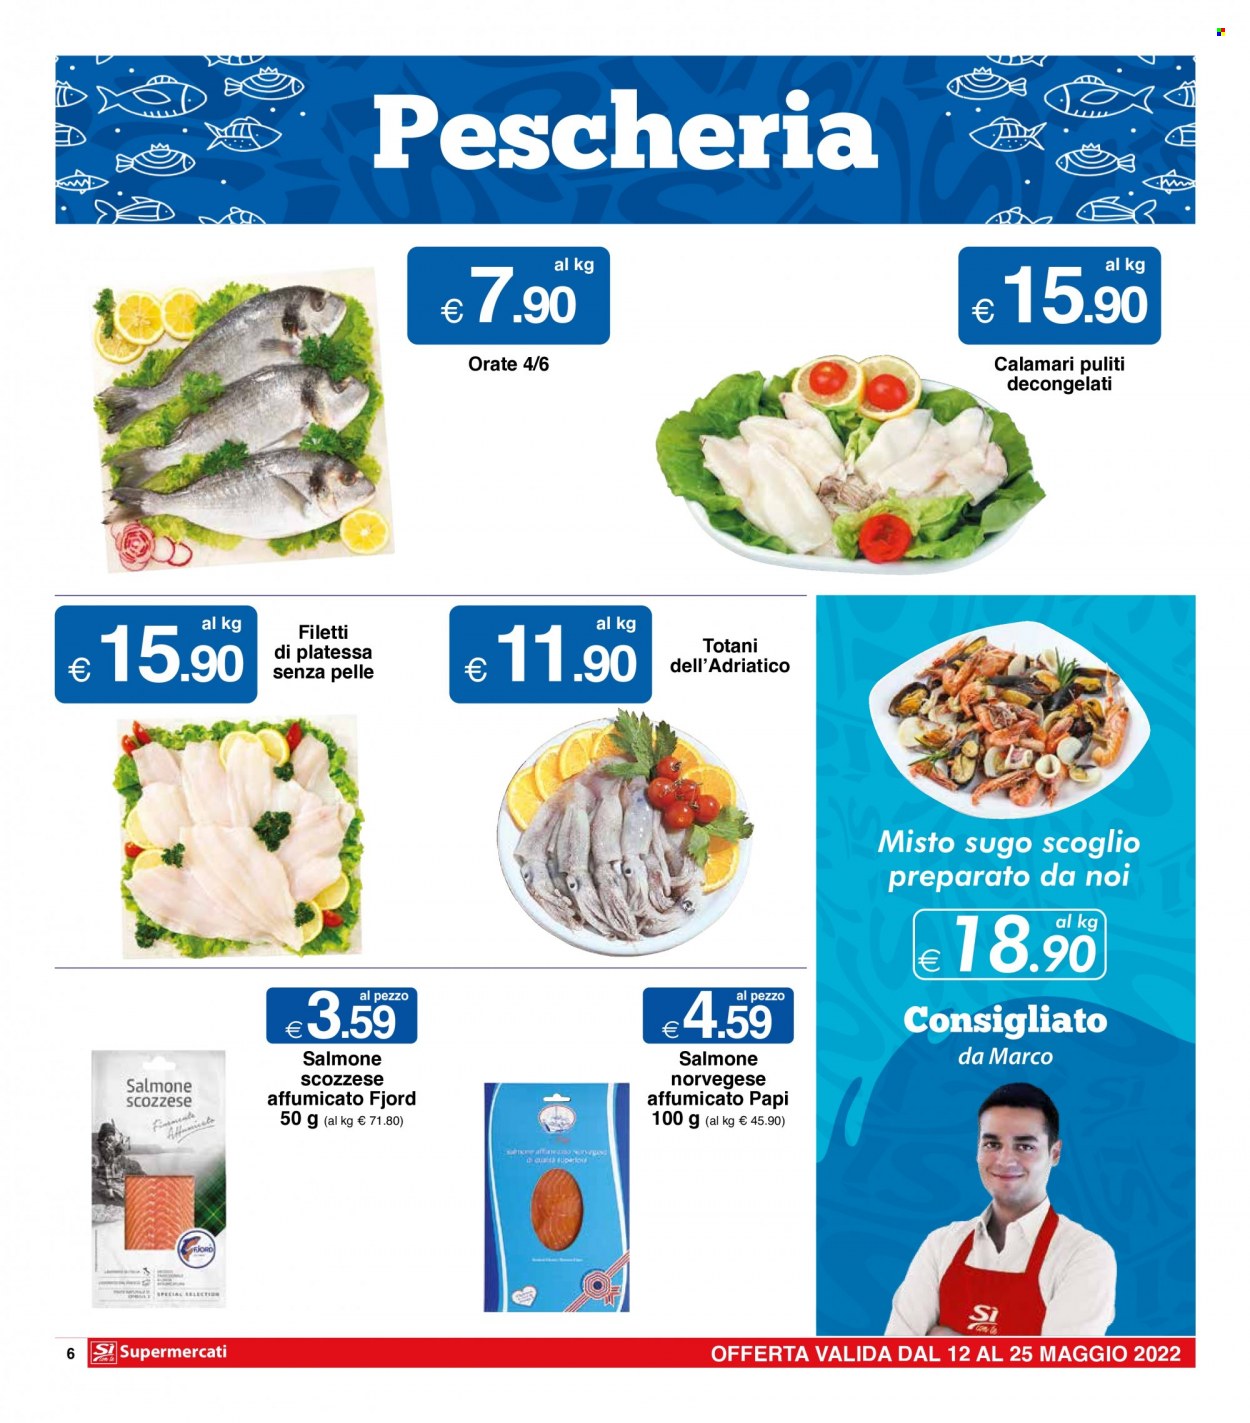 thumbnail - Volantino Si con te Supermercati - 12/5/2022 - 25/5/2022 - Prodotti in offerta - salmone, calamari, filetti di platessa, totani, platessa, sugo, salmone affumicato, salmone scozzese affumicato. Pagina 6.